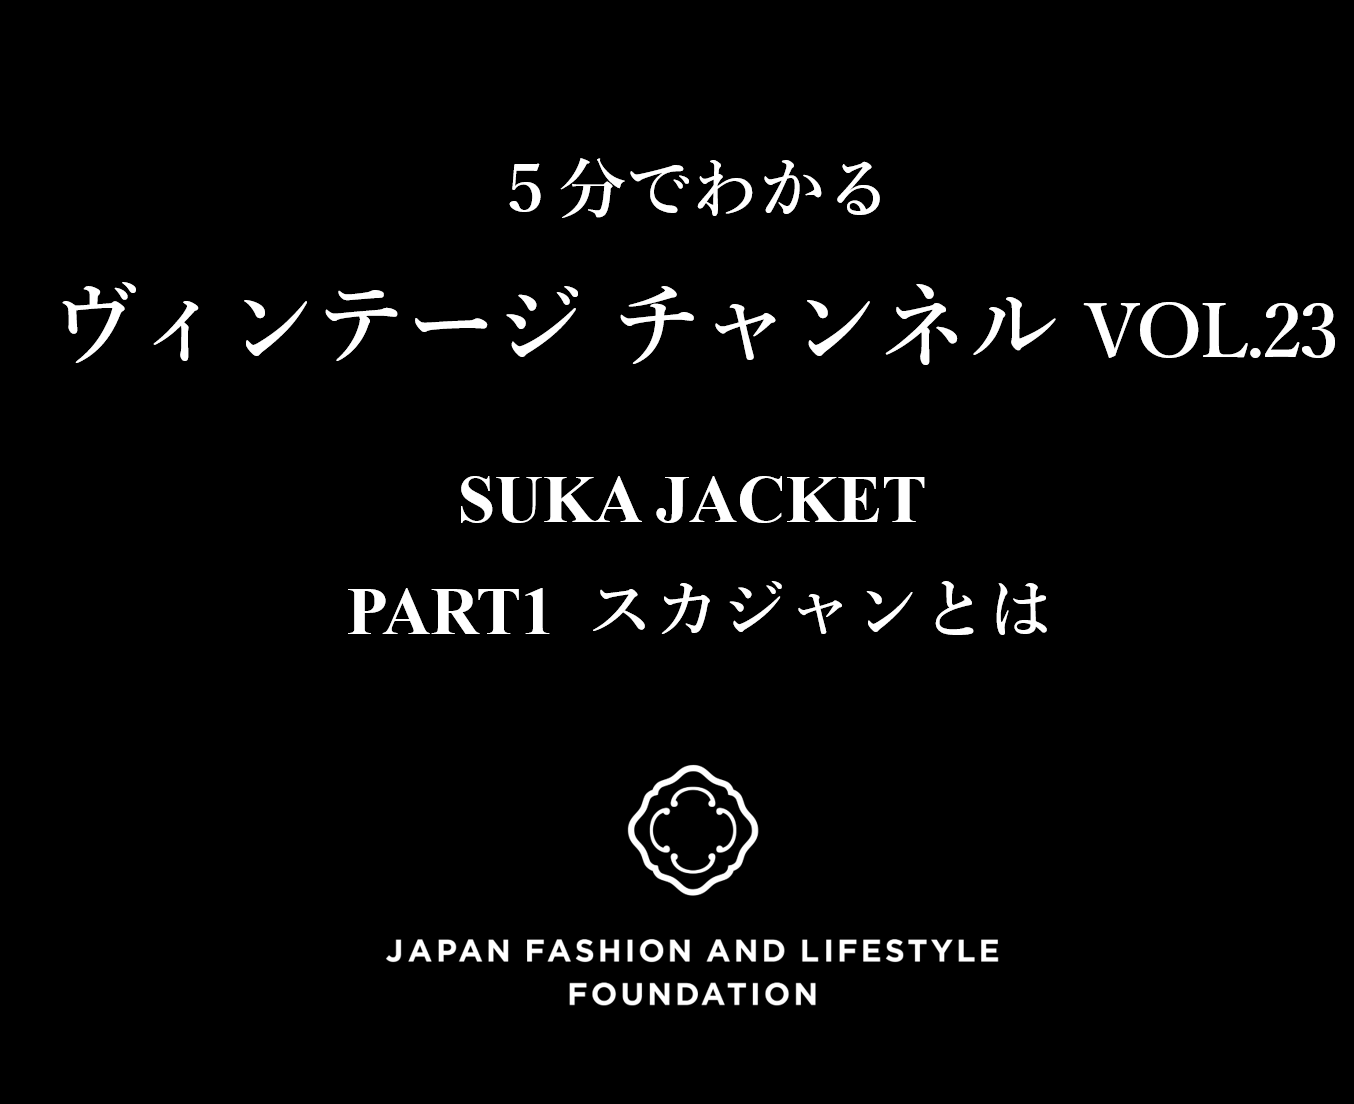 「5分でわかるヴィンテージチャンネル」 VOL.23 SUKA JACKET PART1 スカジャンとは 発信